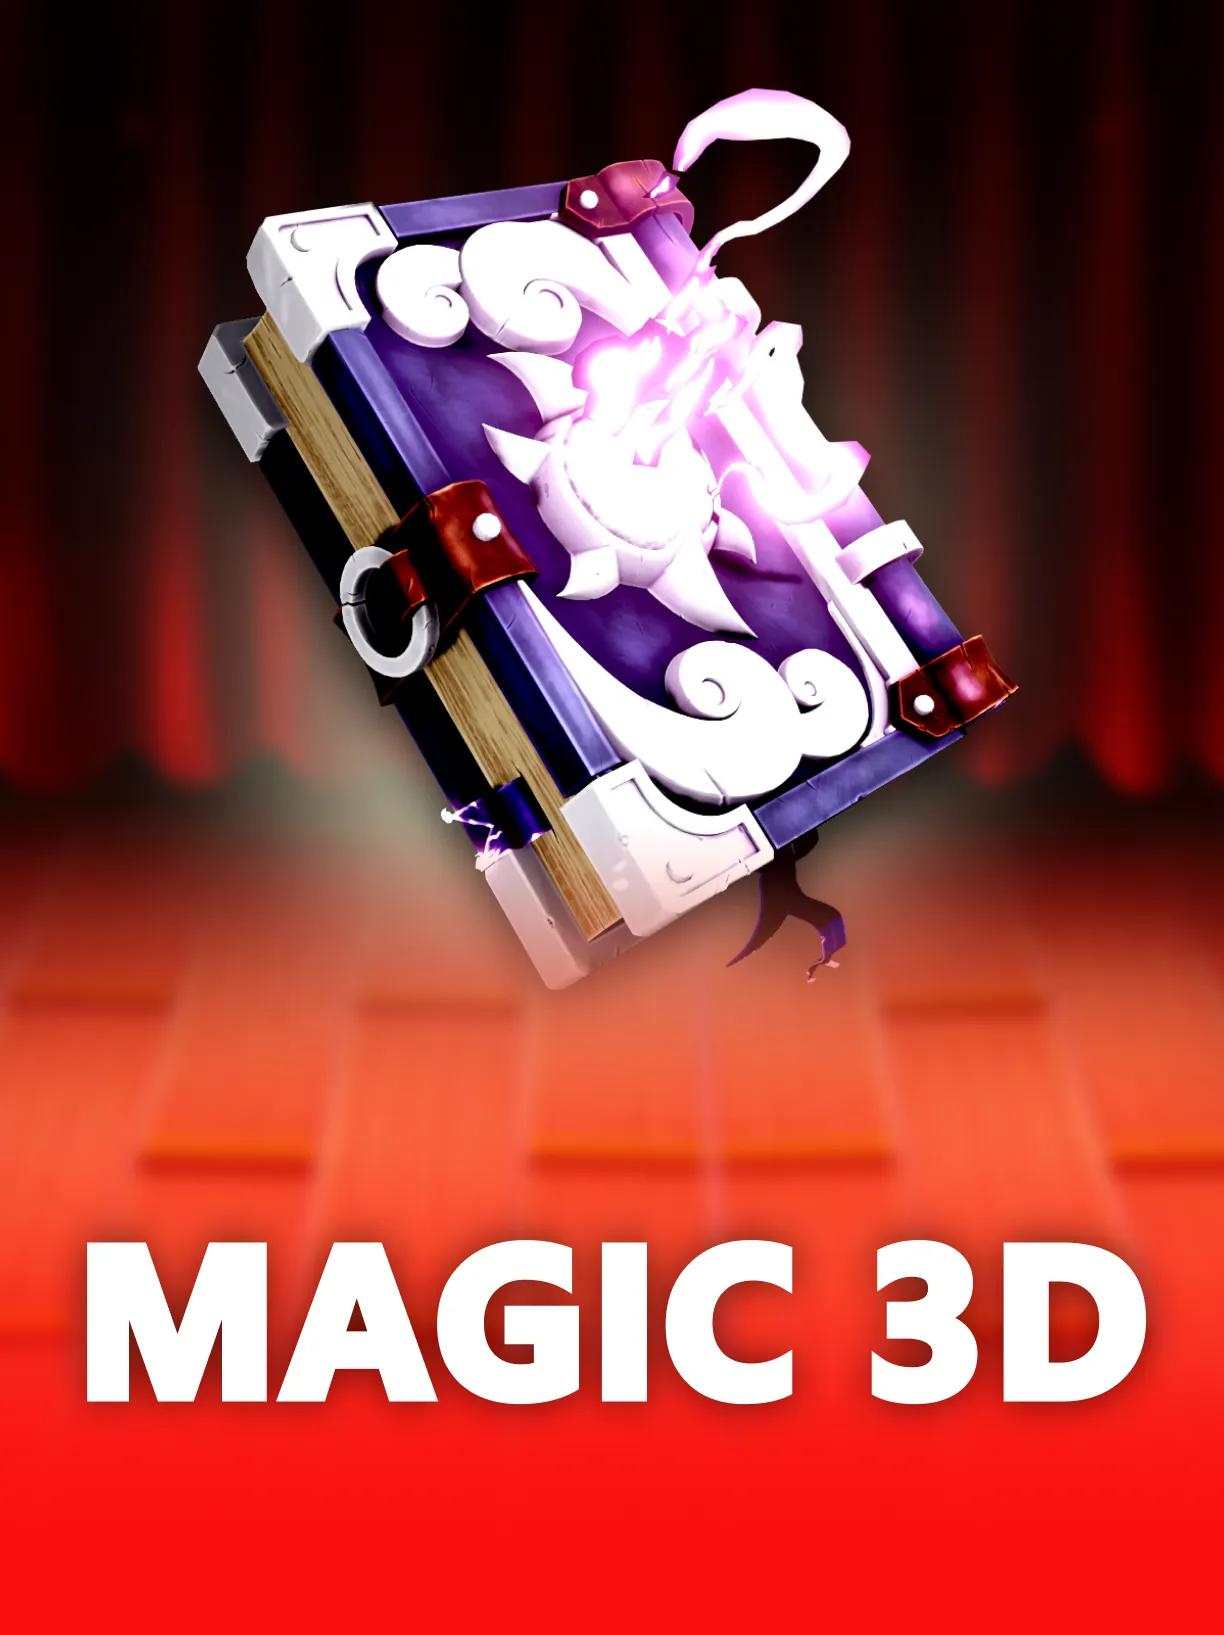 Magic 3D